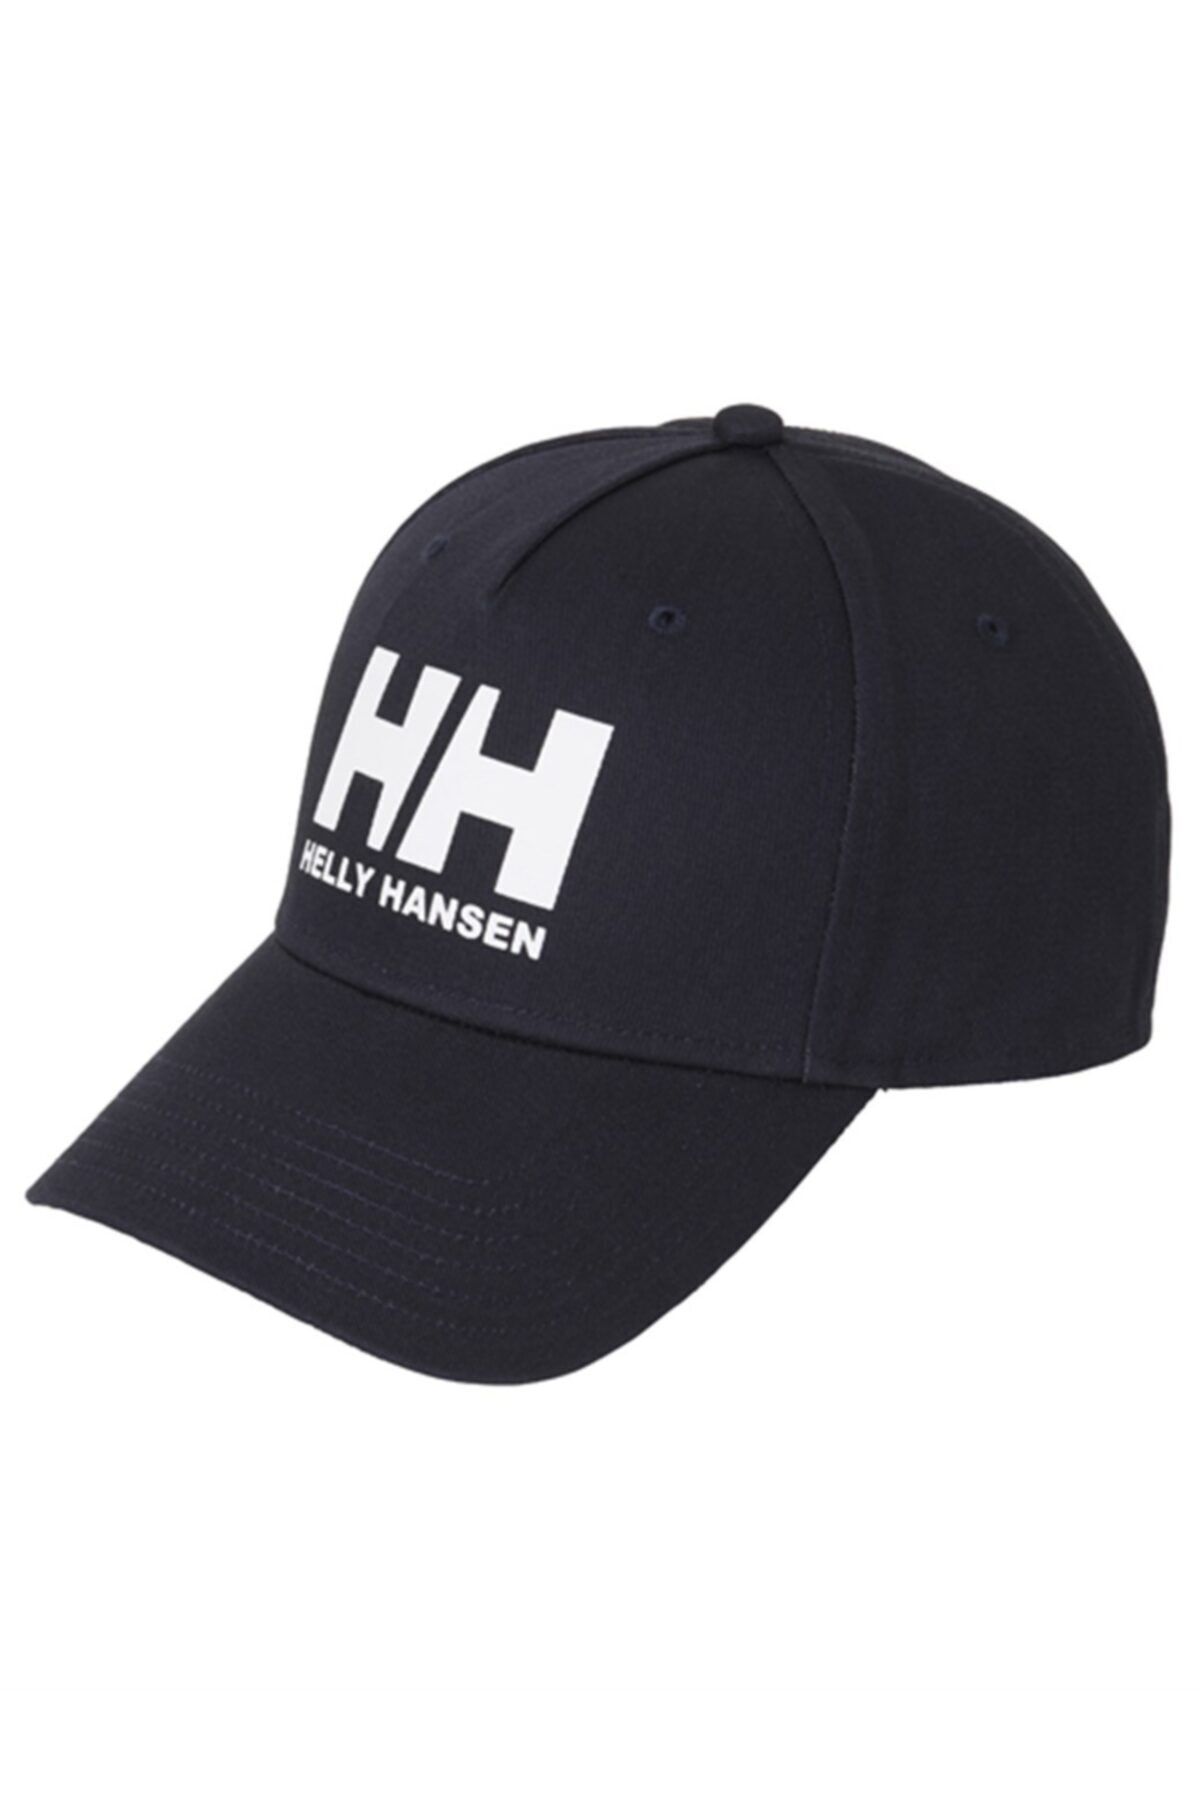 Helly Hansen Hh Ball Cap